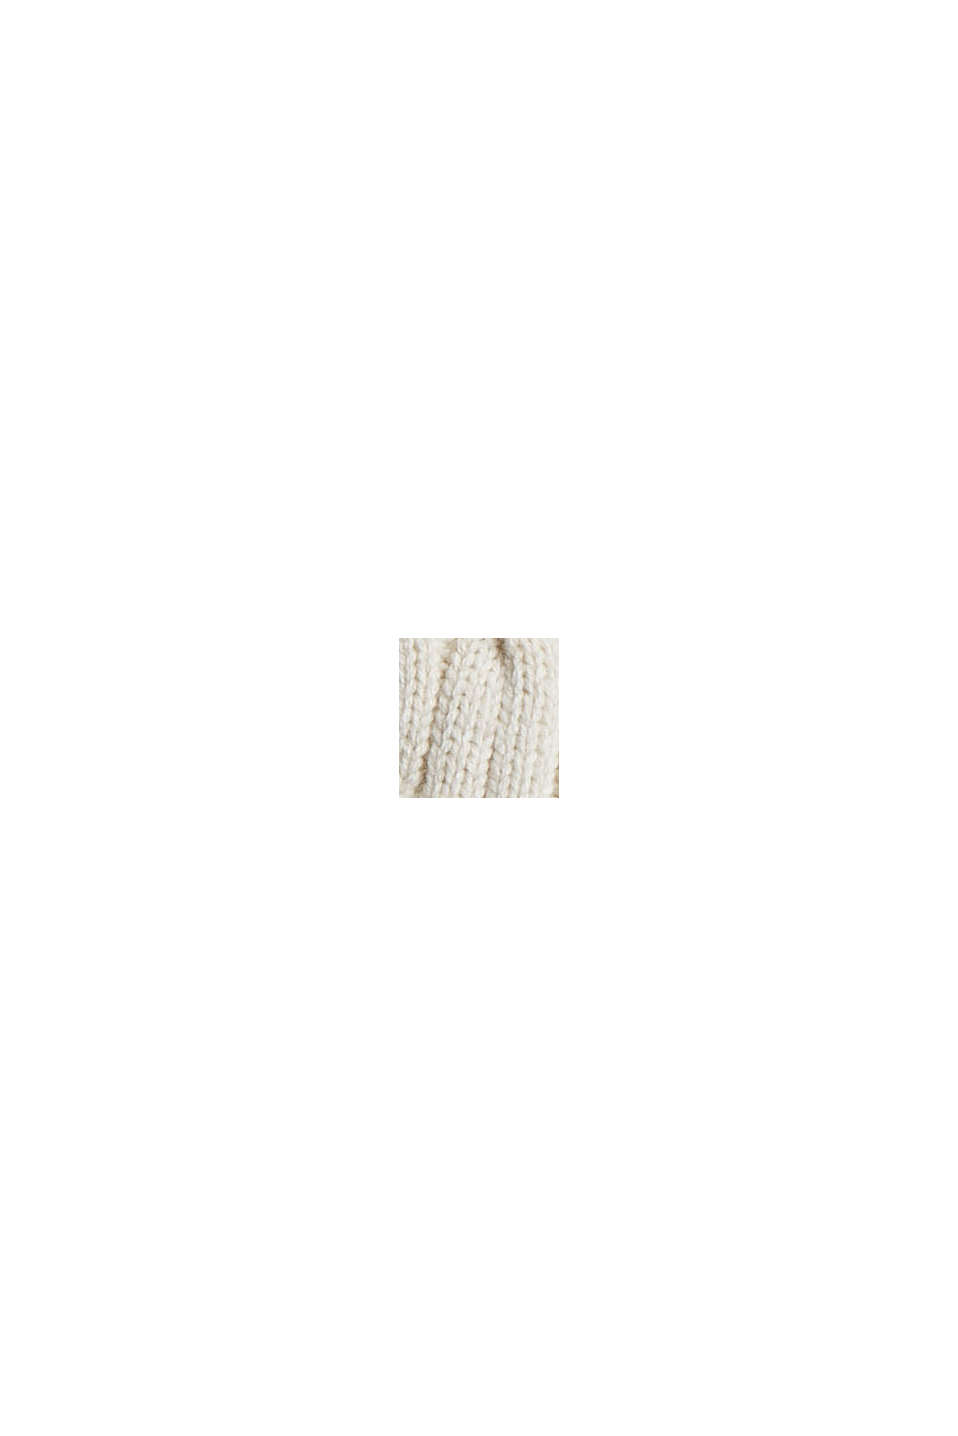 Jersey de punto trenzado en mezcla de algodón ecológico, OFF WHITE, swatch